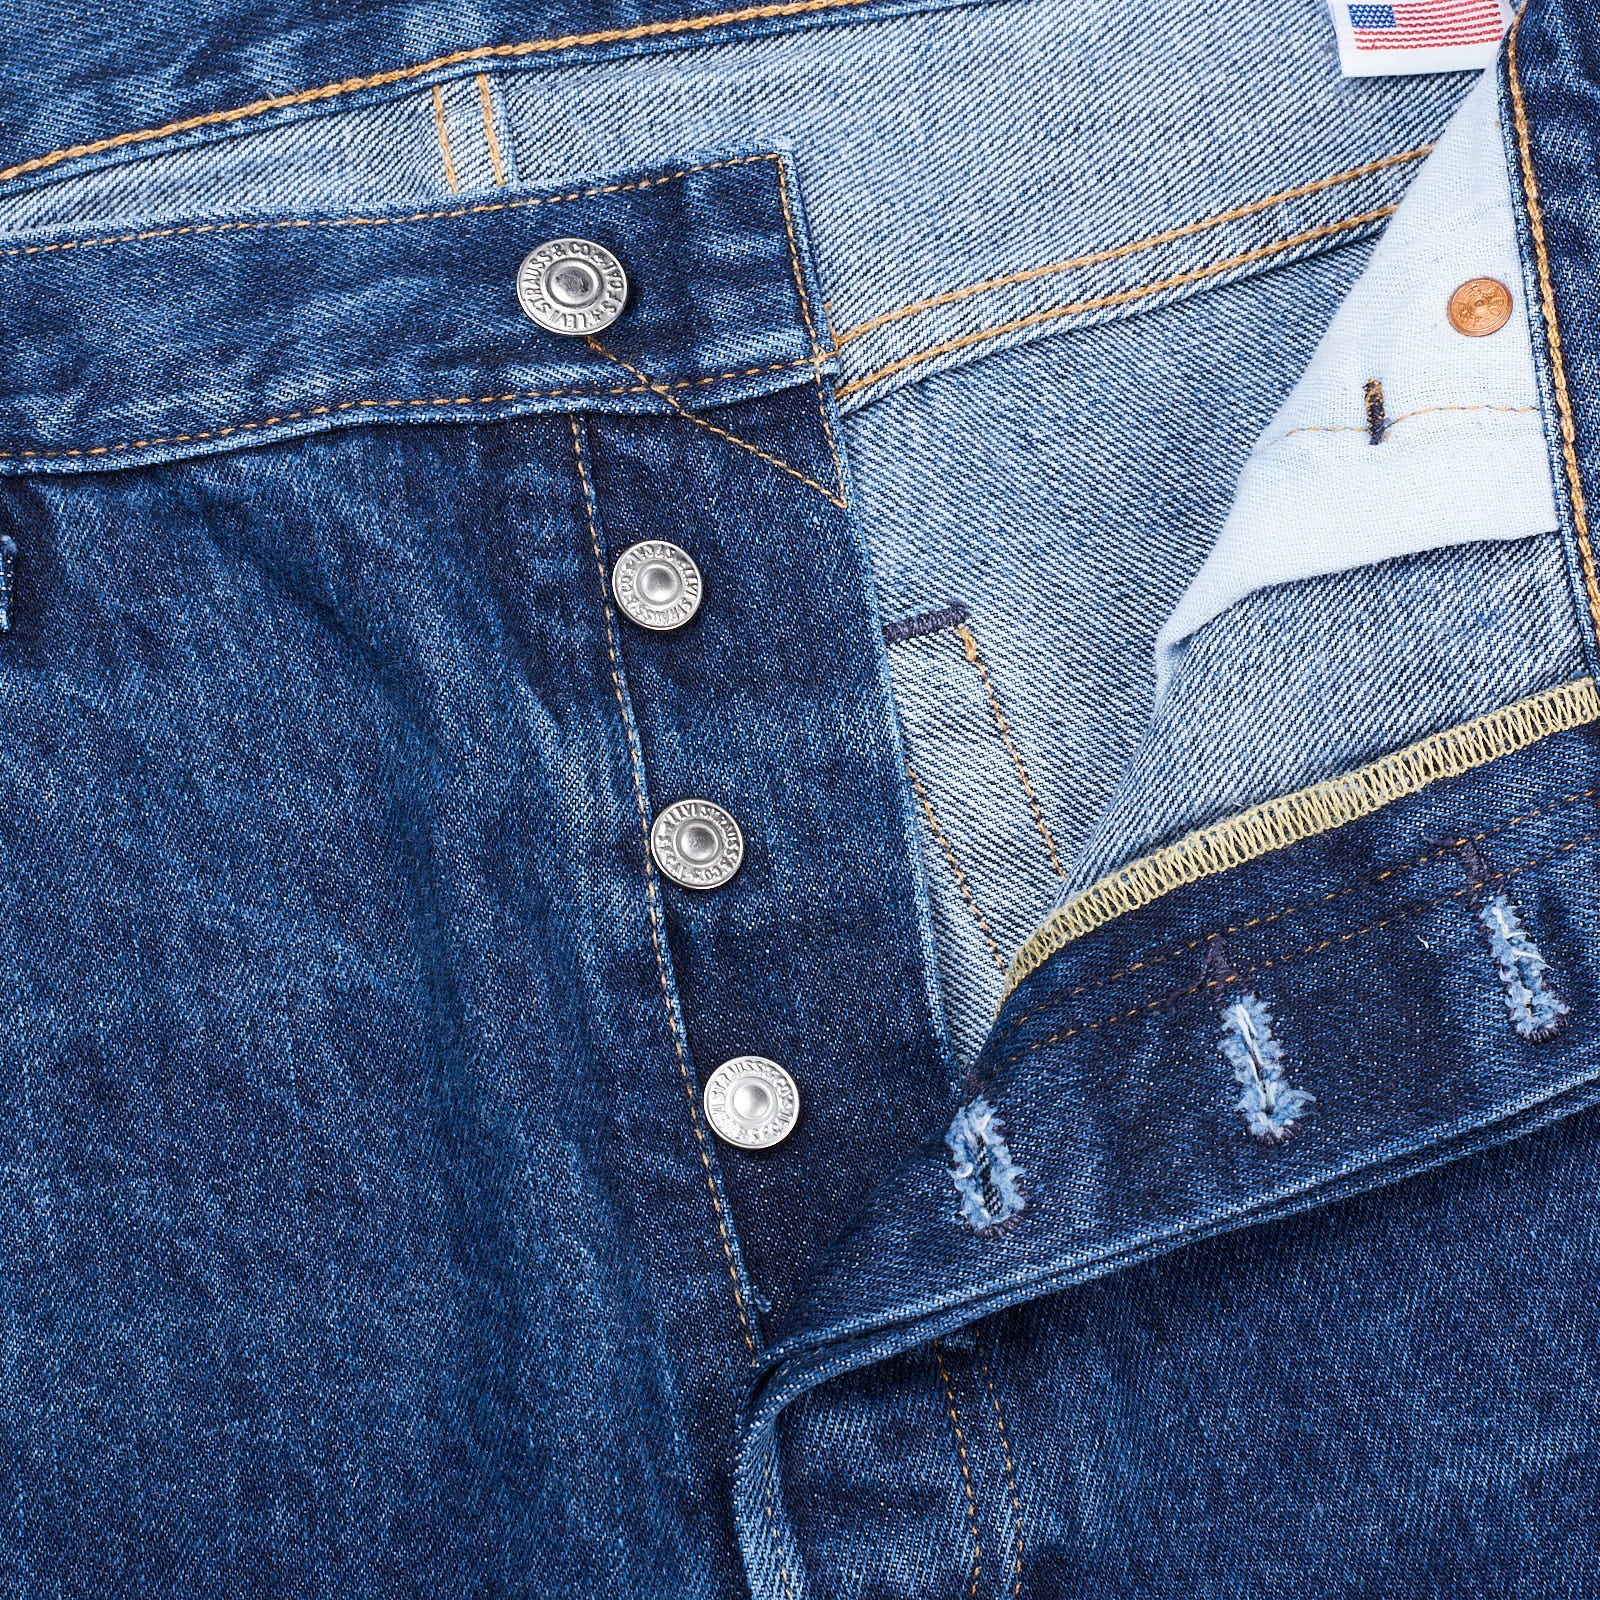 LEVI'S Premium 501 Original Fit Big E Made in USA Blue Rinse Denim Jeans W36 L34 LEVI'S